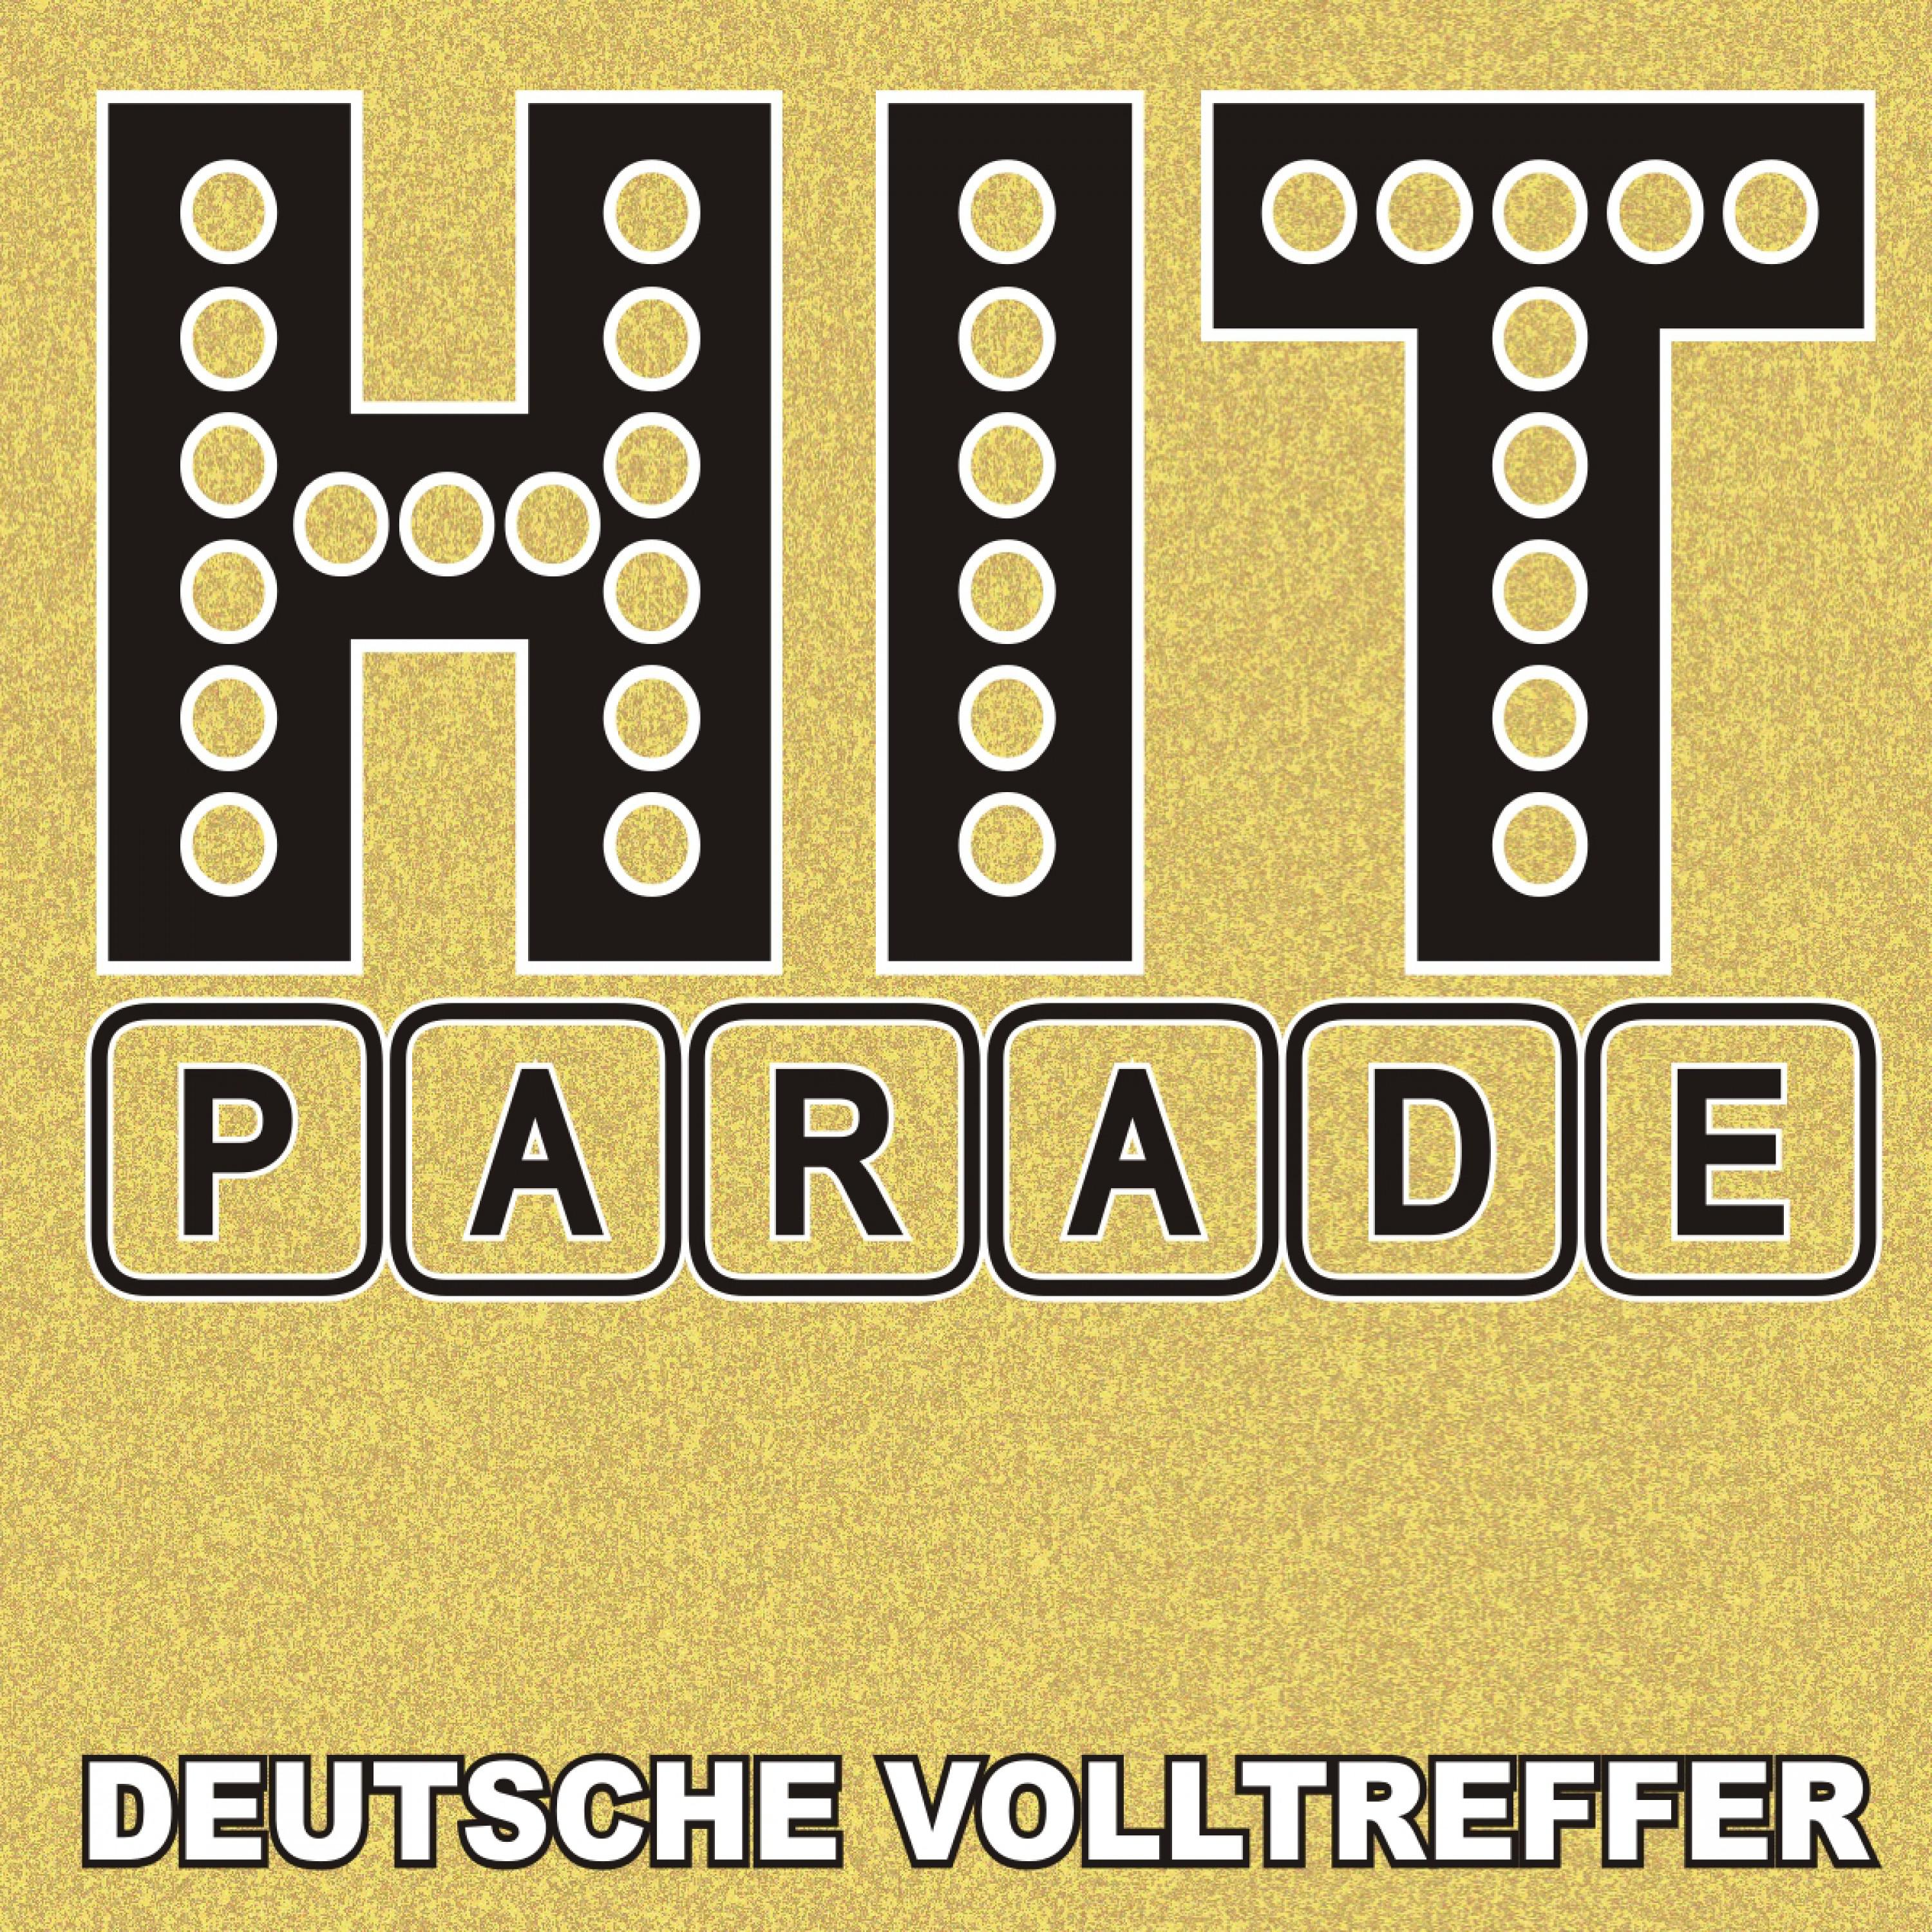 Hitparade! Deutsche Volltreffer